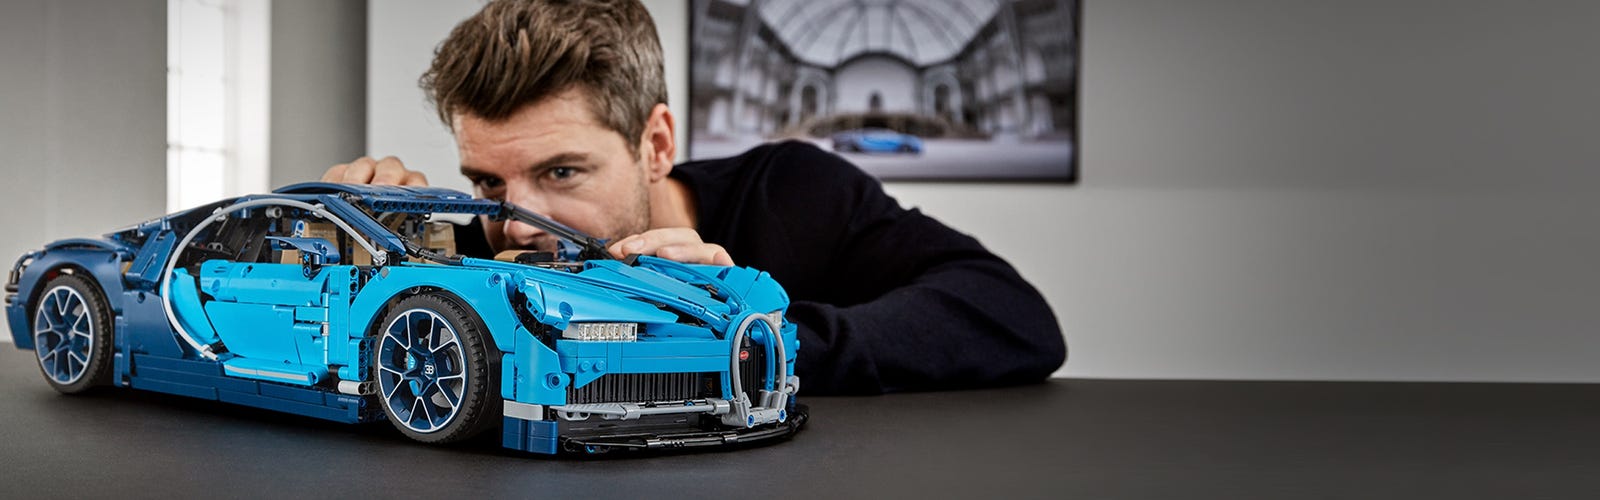 Bugatti Chiron Lego état neuf. Avec boîtes d'origine + les deux